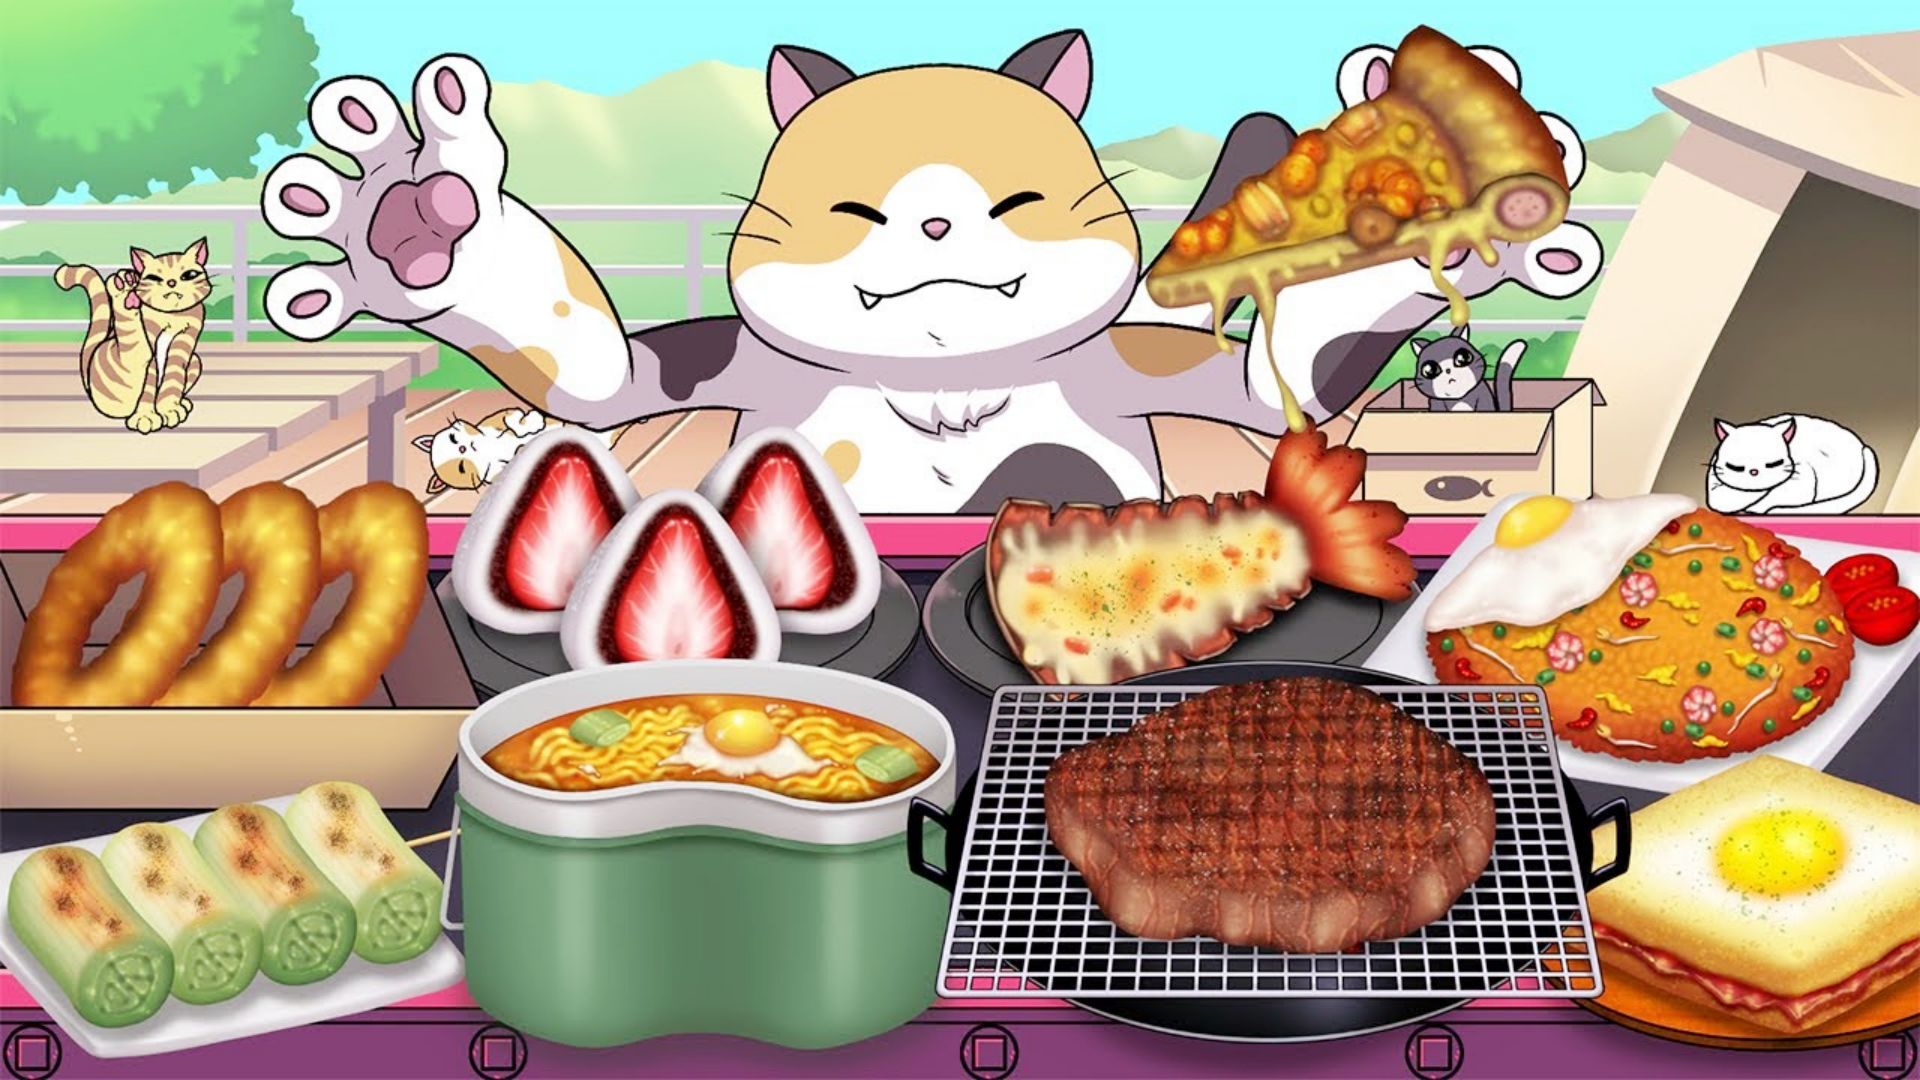 美食动画:料理猫王的豪华版美食盛宴,丰富多样,哪一个最好吃?